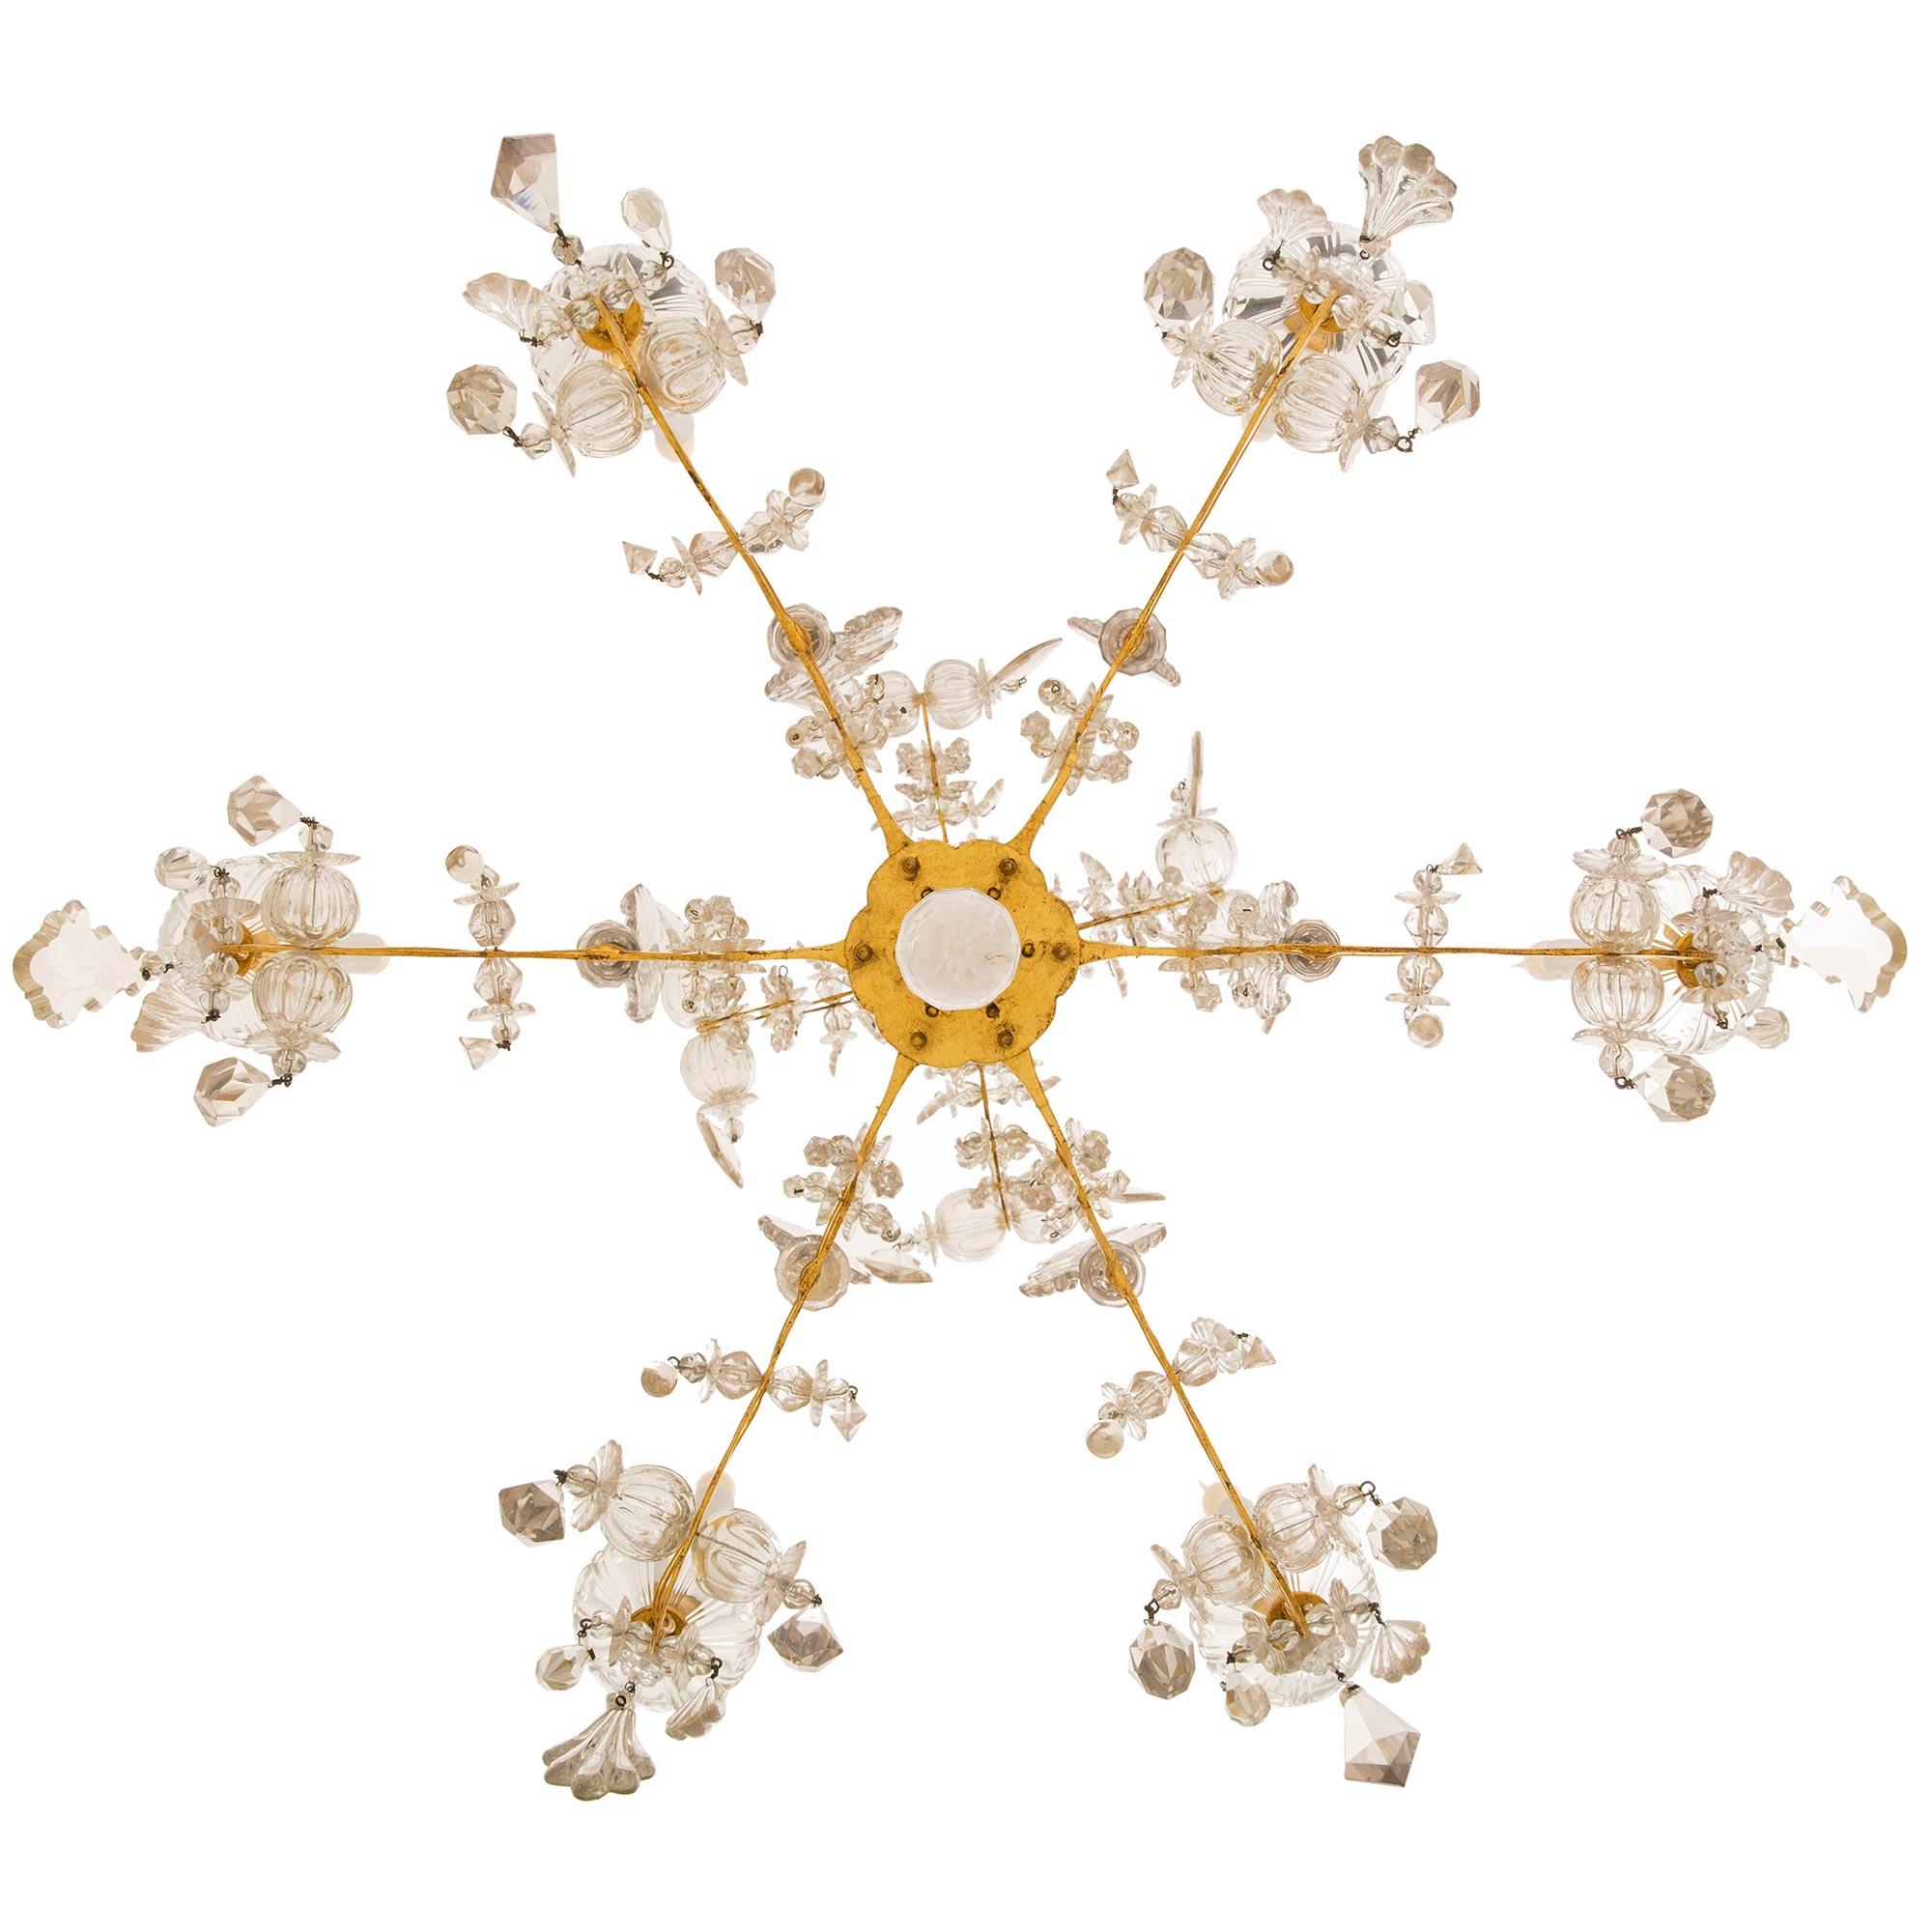 Ein atemberaubendes und äußerst dekoratives Paar italienischer venezianischer Kronleuchter aus vergoldetem Metall und Kristall aus dem 18. In der Mitte jedes sechsarmigen Kronleuchters befindet sich ein wunderschöner, zarter, tropfenförmiger